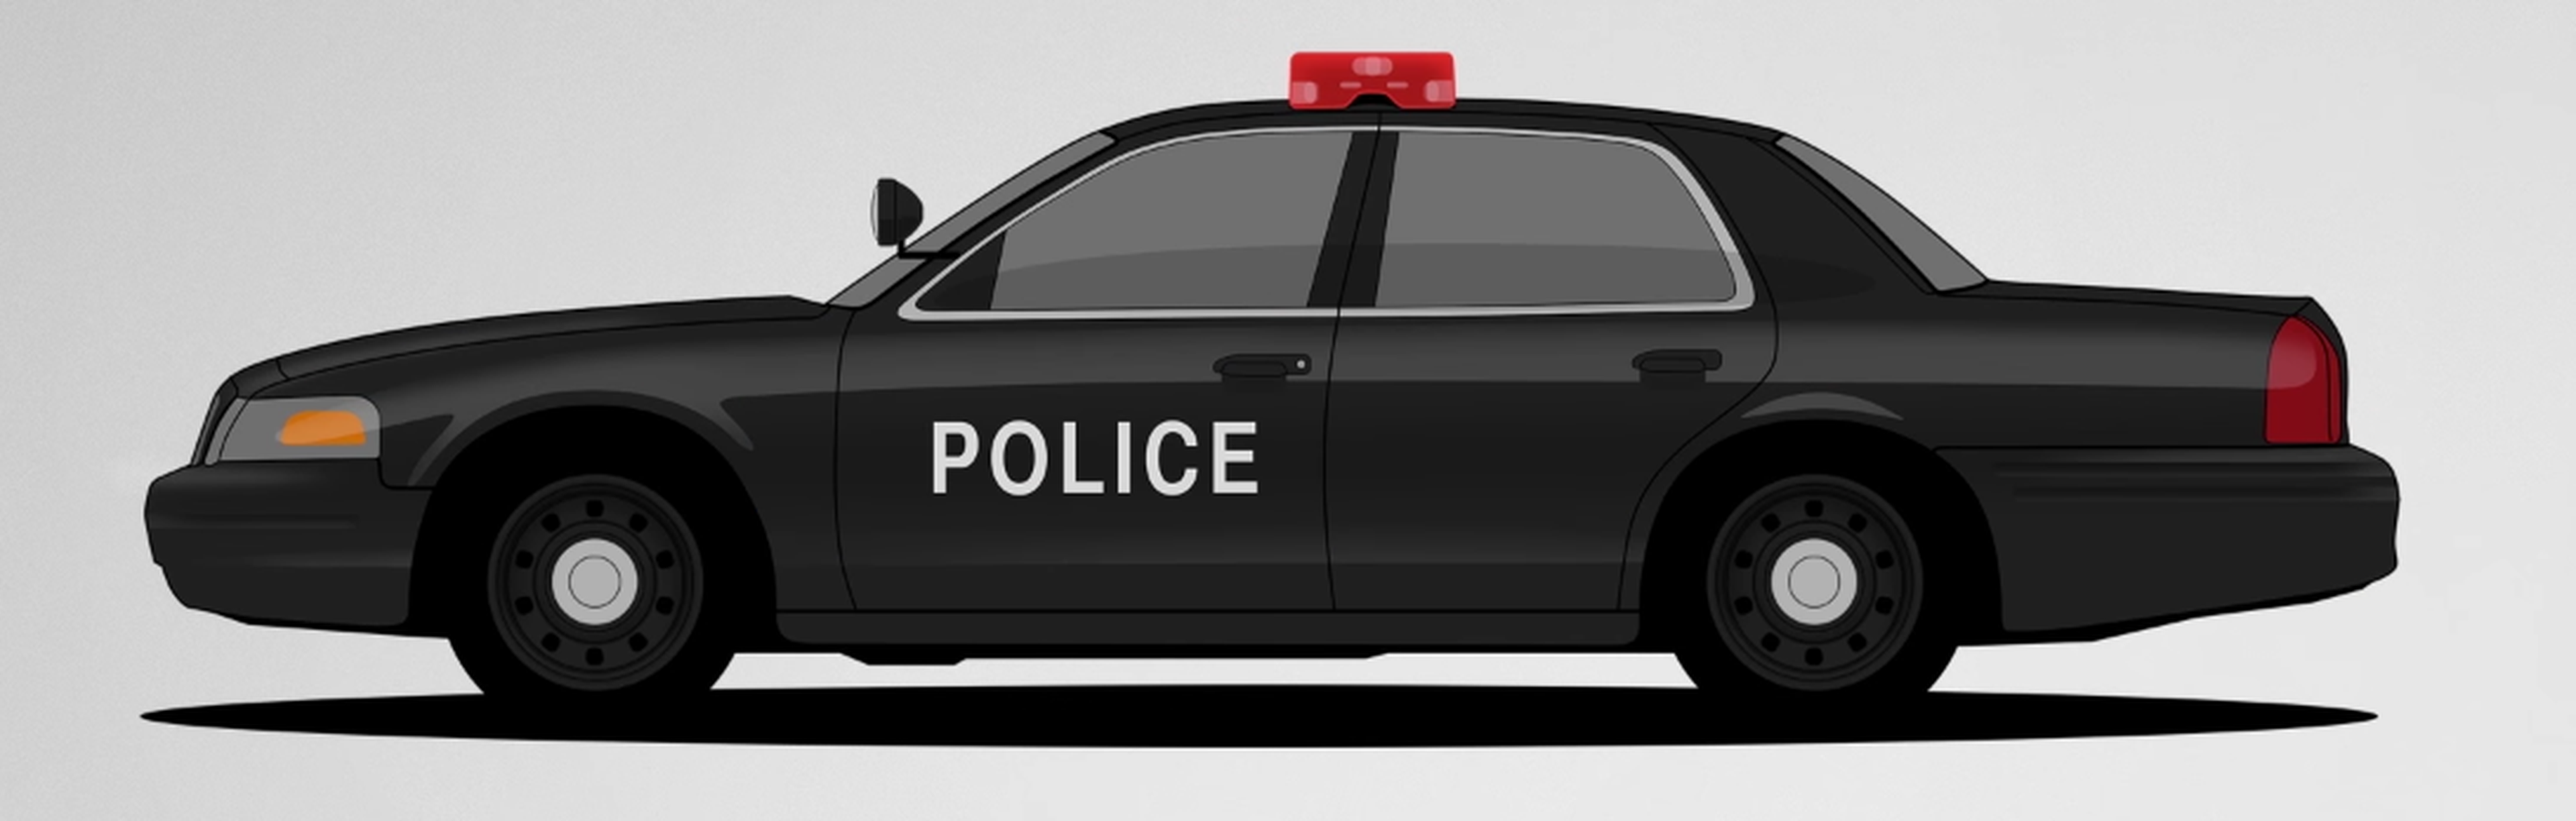 VÍDEO: ¡Mola! Mira la evolución de los coches de policía en EE.UU